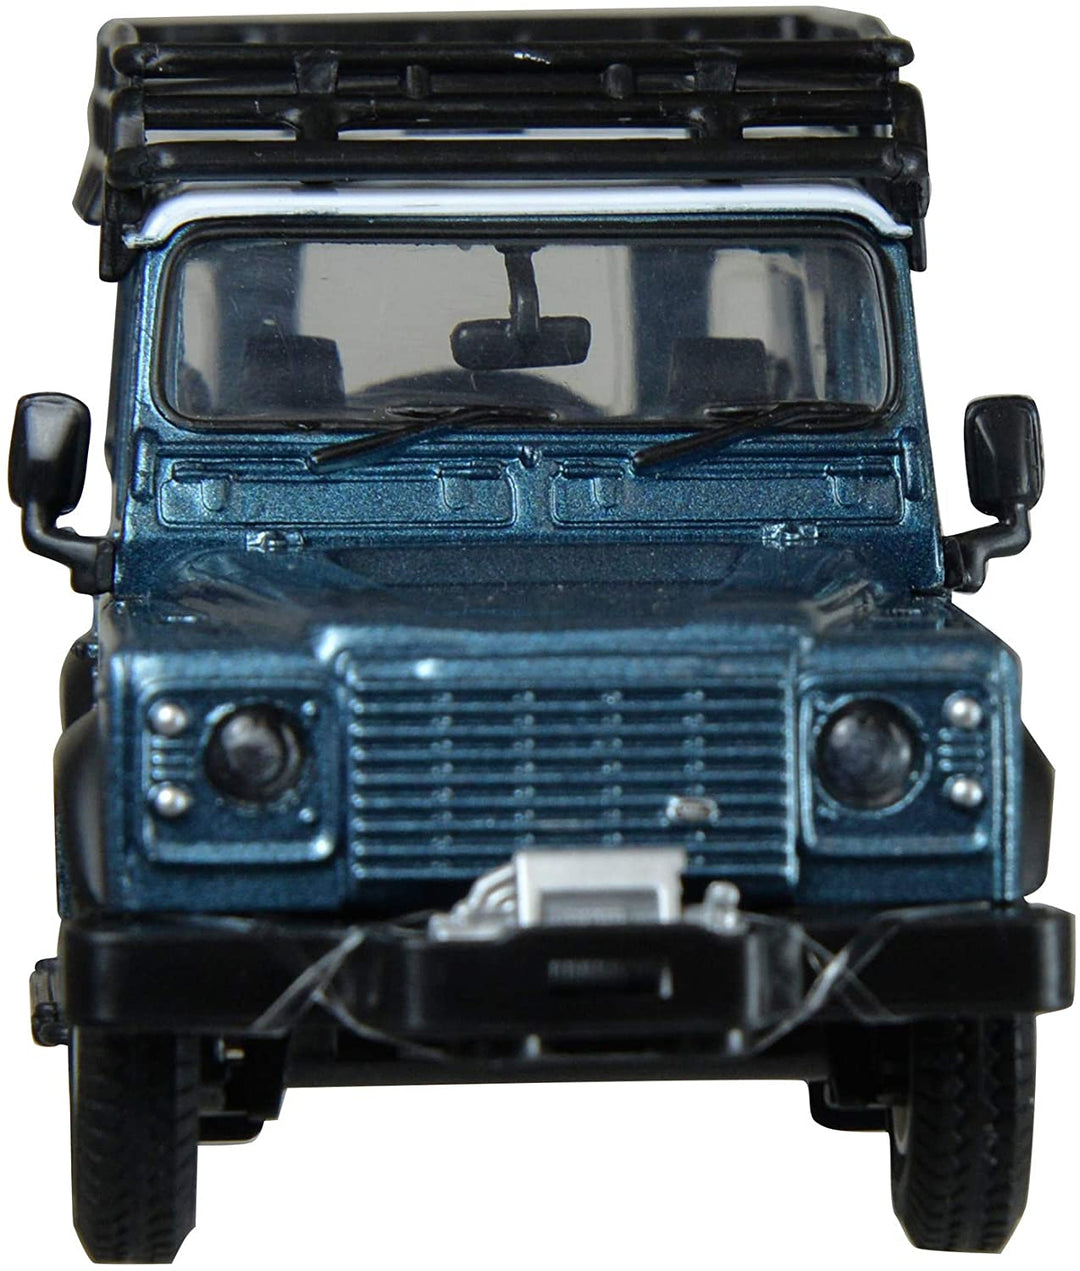 Britains 1:32 Land Rover Defender blau mit Dachträger und Seilwinde – sammelbares Bauernhoffahrzeug, 4x4-Autospielzeug – geeignet ab 3 Jahren